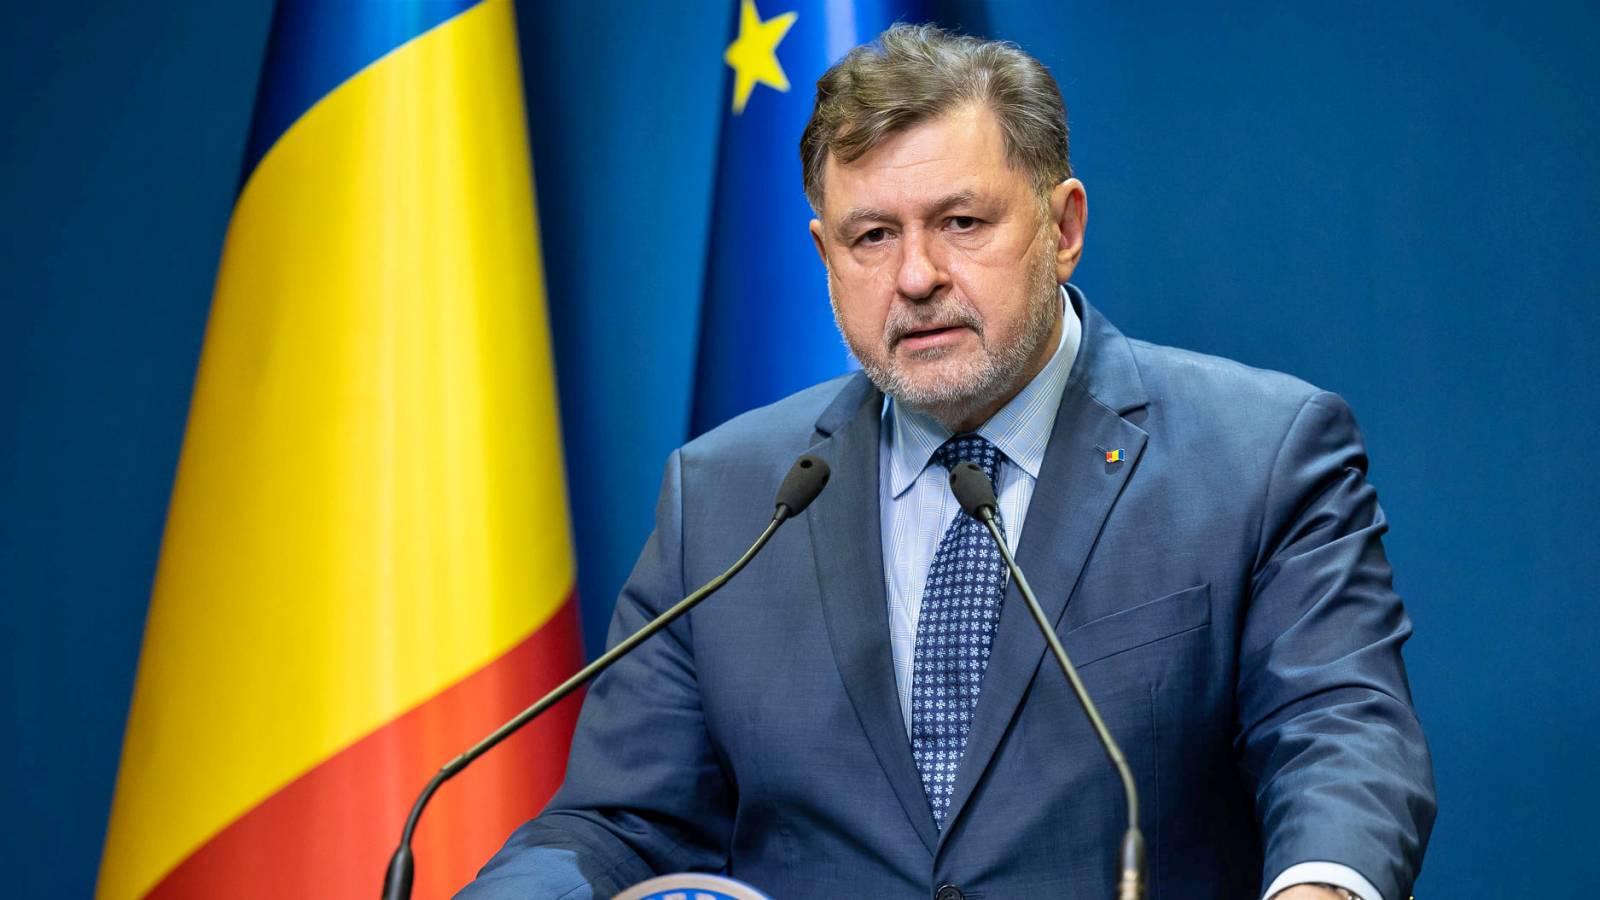 Het besluit van de minister van Volksgezondheid LAATSTE KEER Groot belang alle Roemenen!